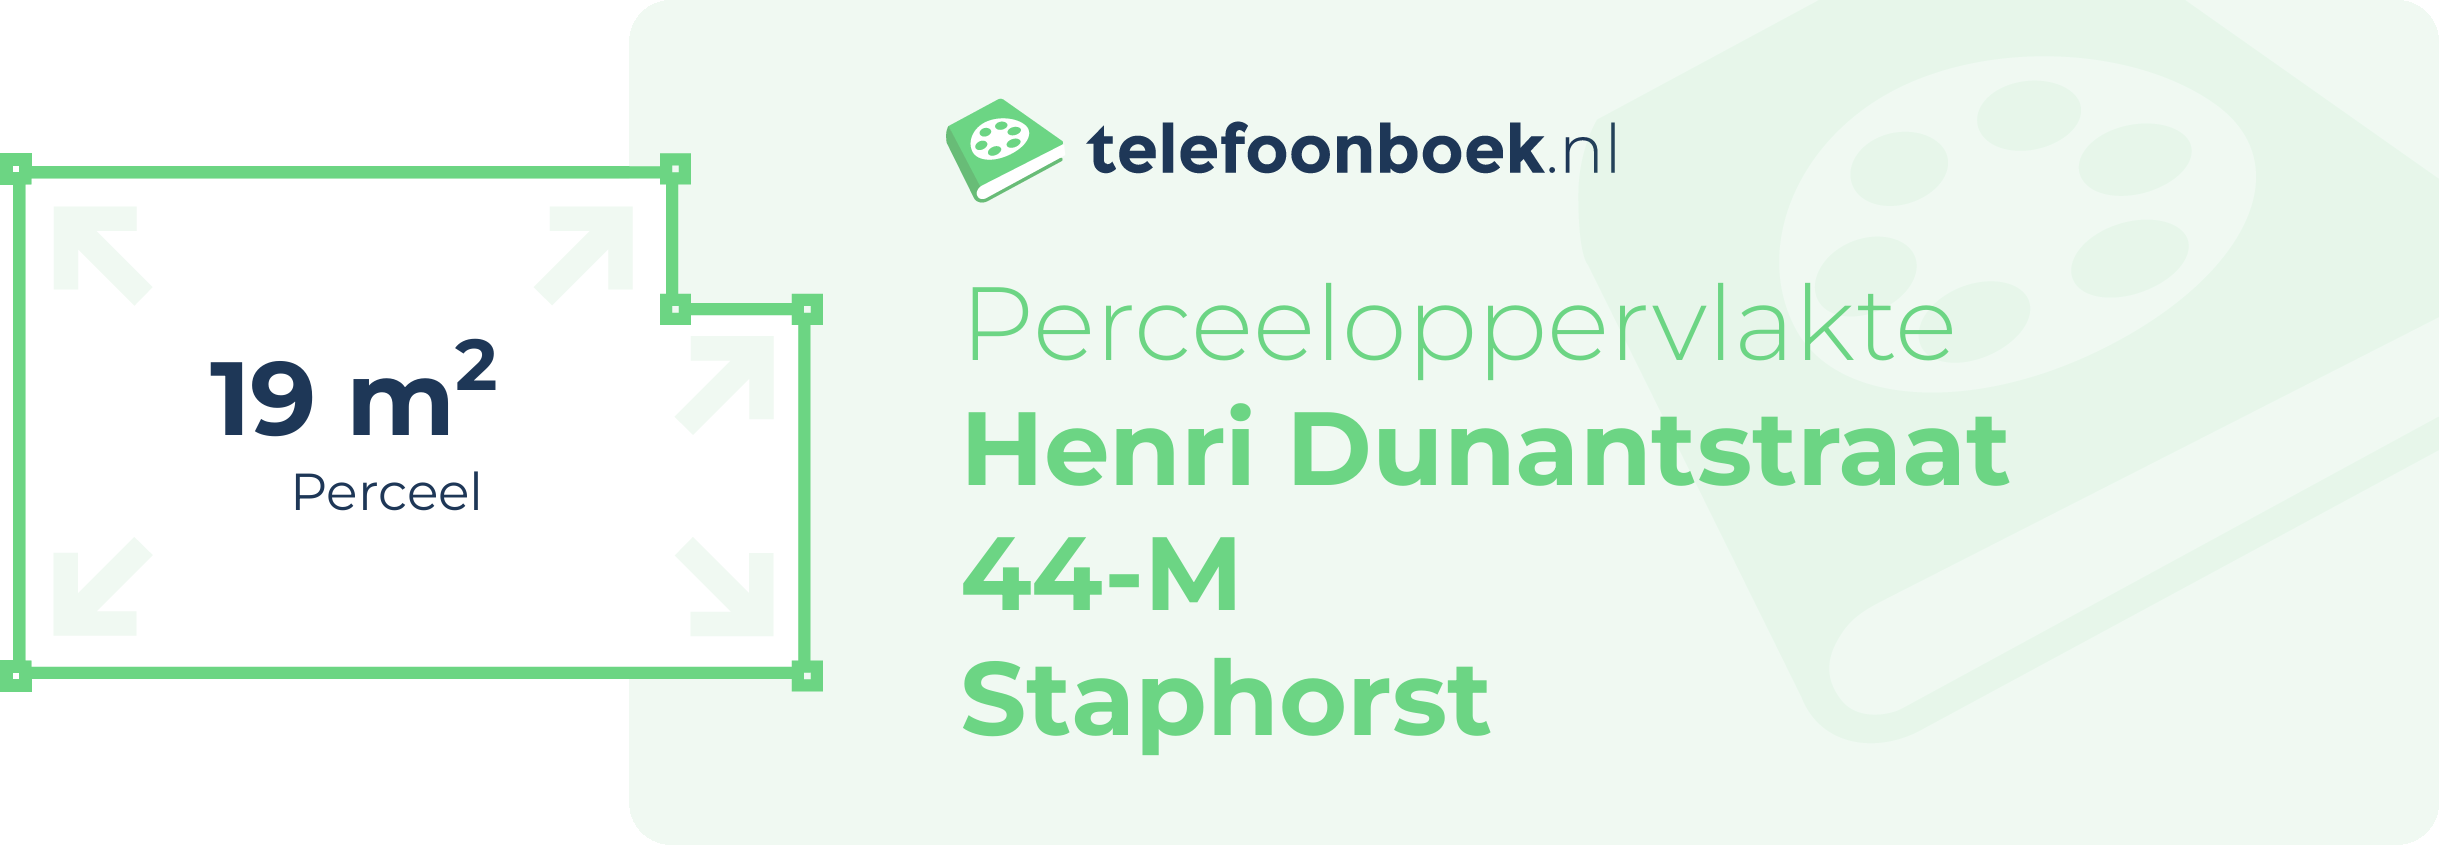 Perceeloppervlakte Henri Dunantstraat 44-M Staphorst